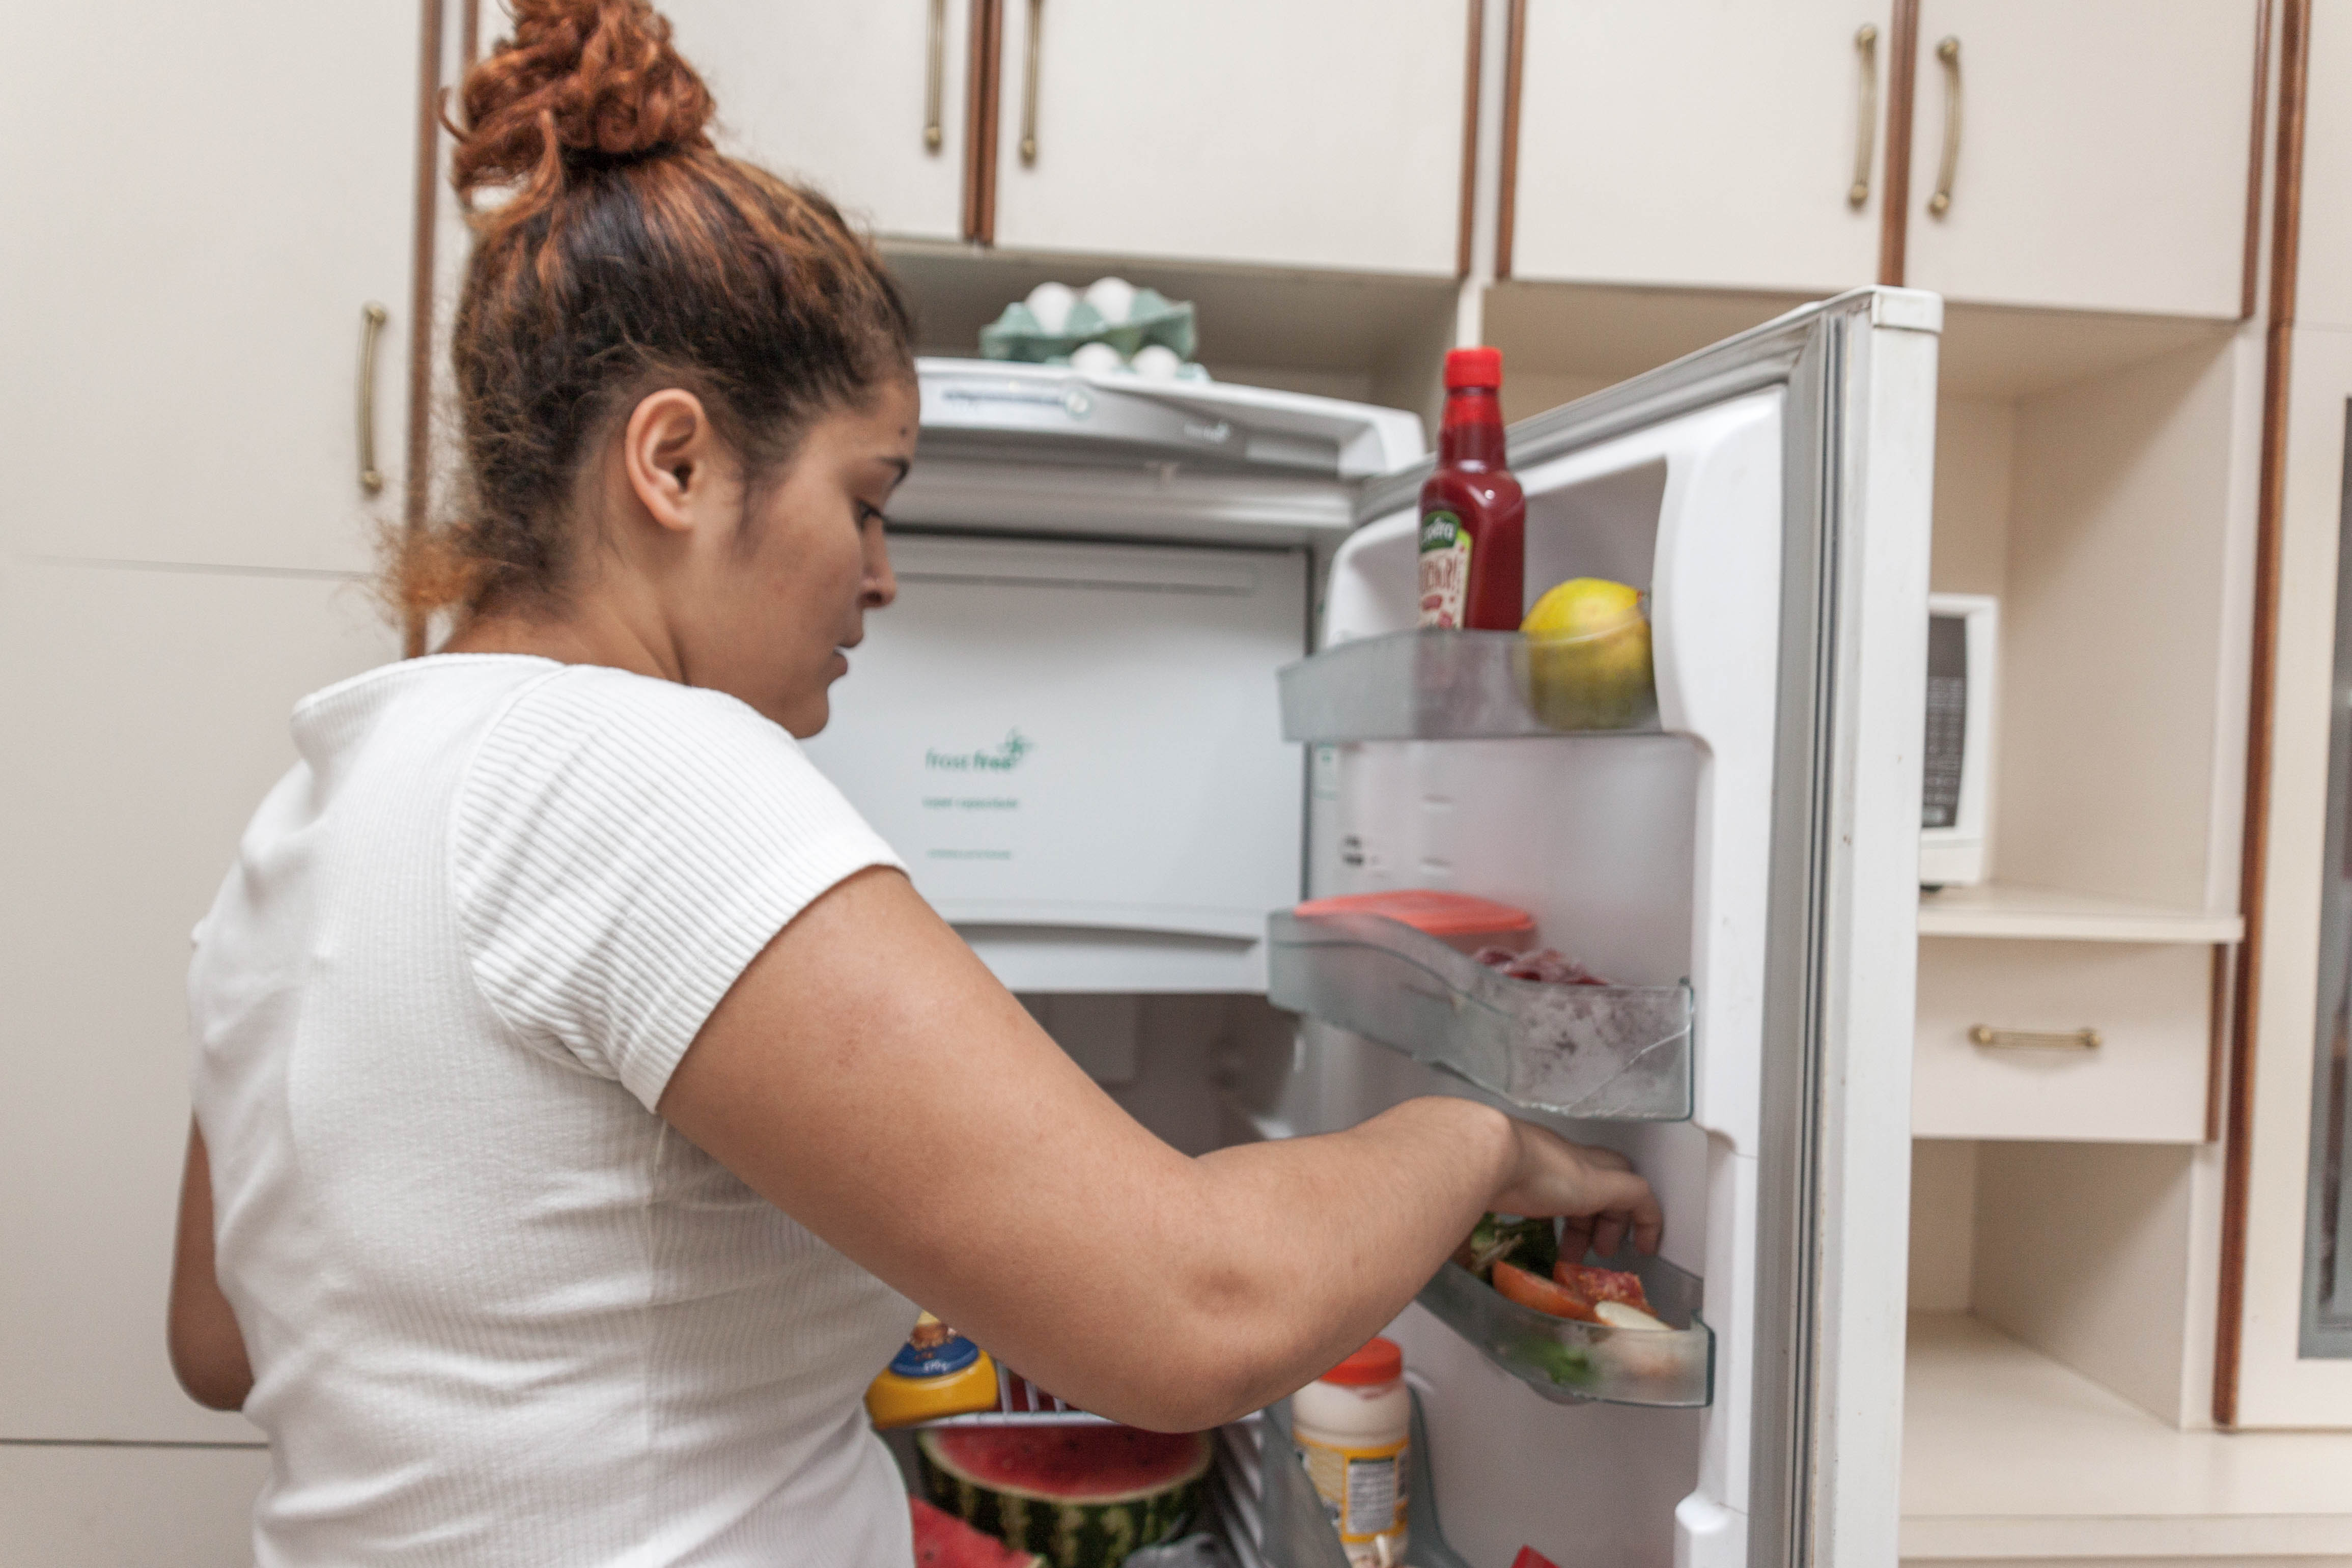 Moradora de República Jovem está arrumando alimentos na porta da geladeira. Ela está usando uma camiseta branca e os cabelos, em tons ruivos, estão presos em um coque.